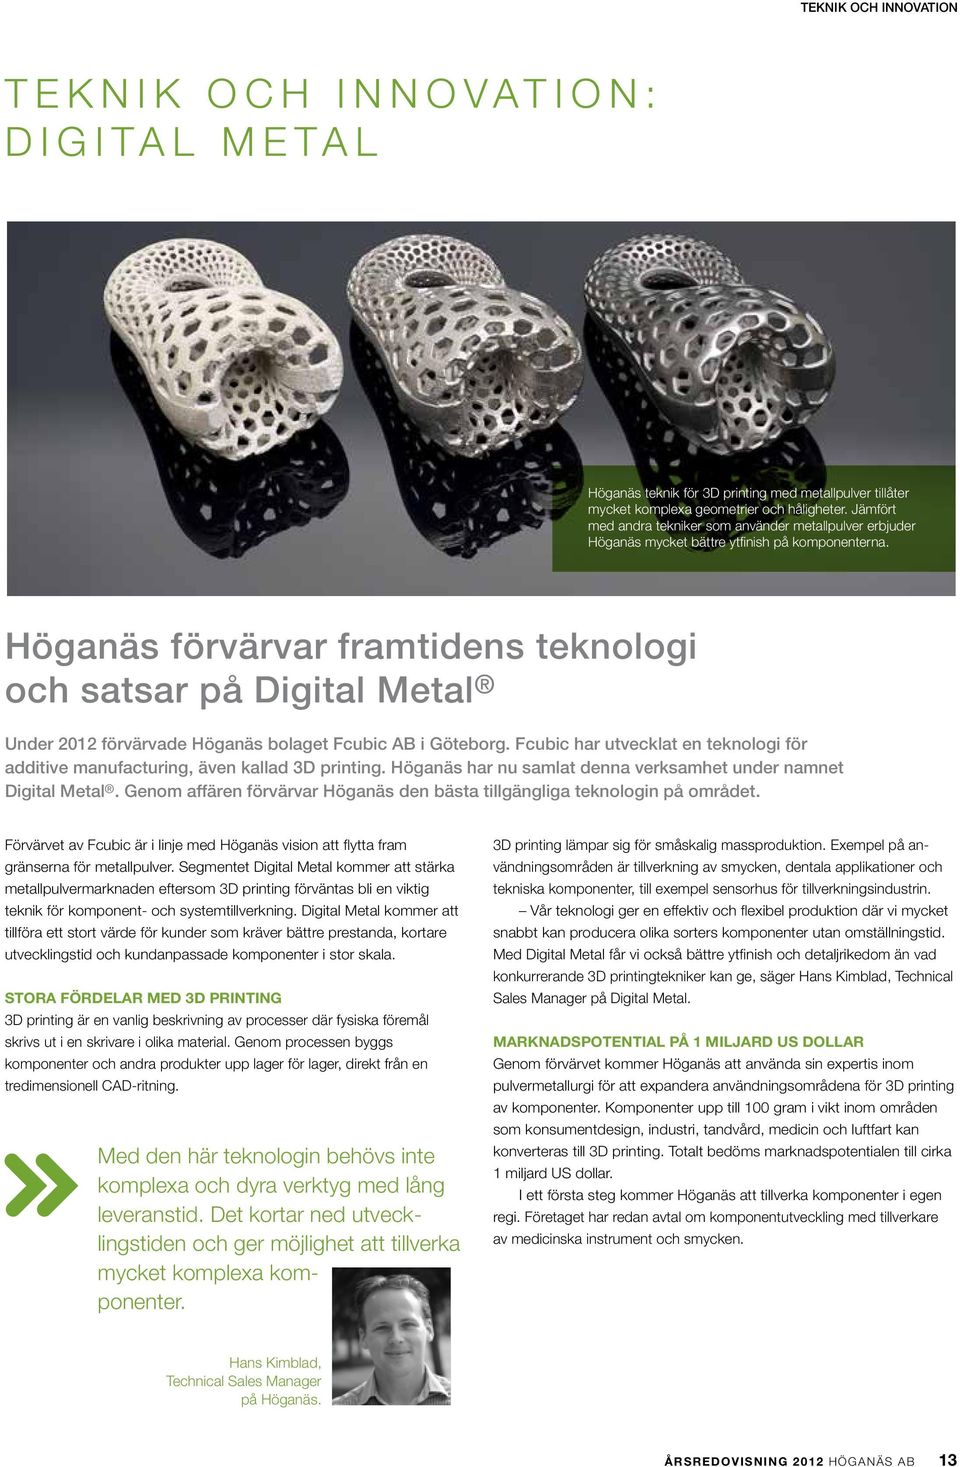 Höganäs förvärvar framtidens teknologi och satsar på Digital Metal Under 2012 förvärvade Höganäs bolaget Fcubic AB i Göteborg.